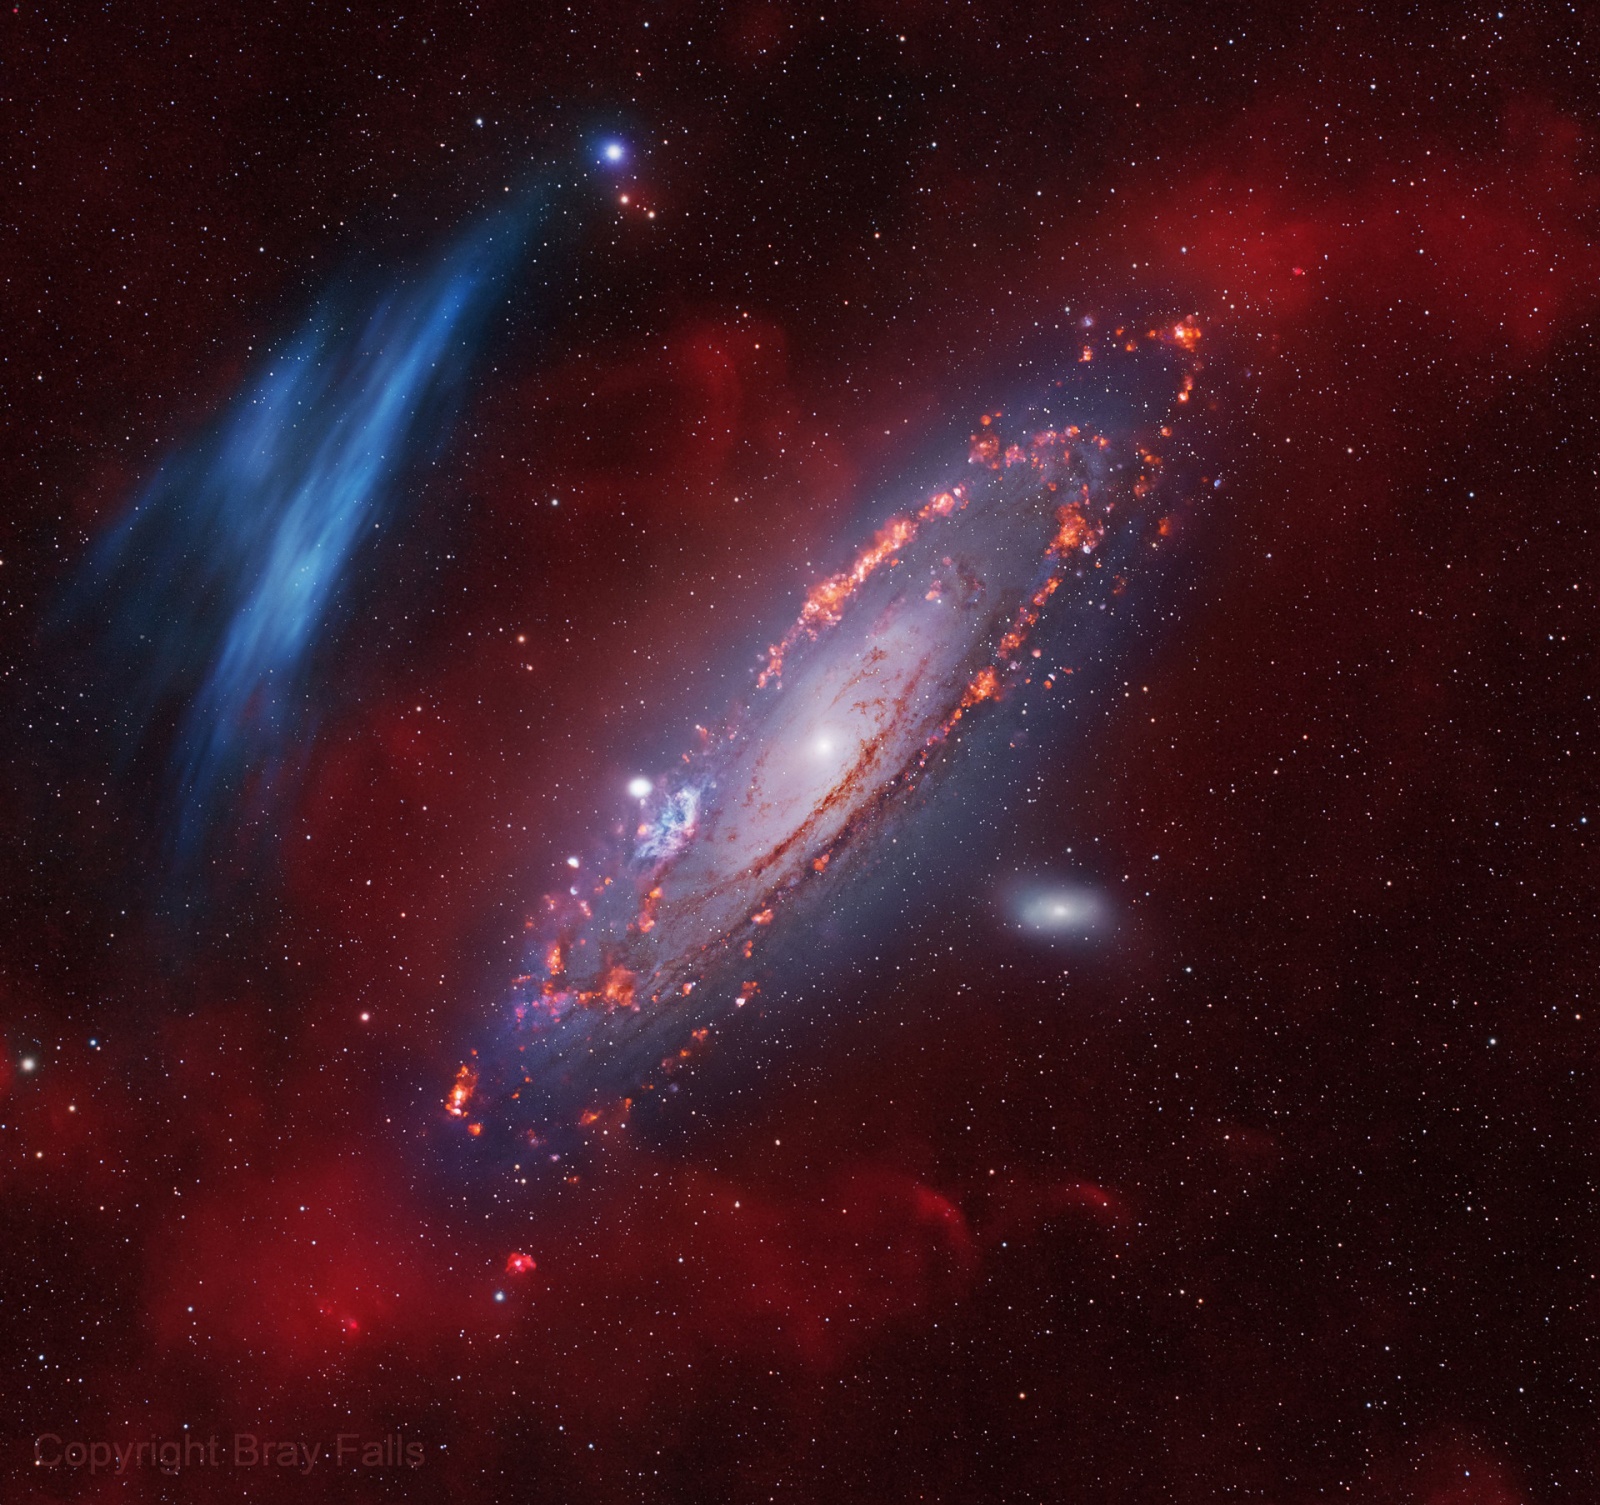 Галактика Андромеды и таинственная кислородная дуга неизвестного пока происхождения. Автор астрофотоснимка Bray Falls  